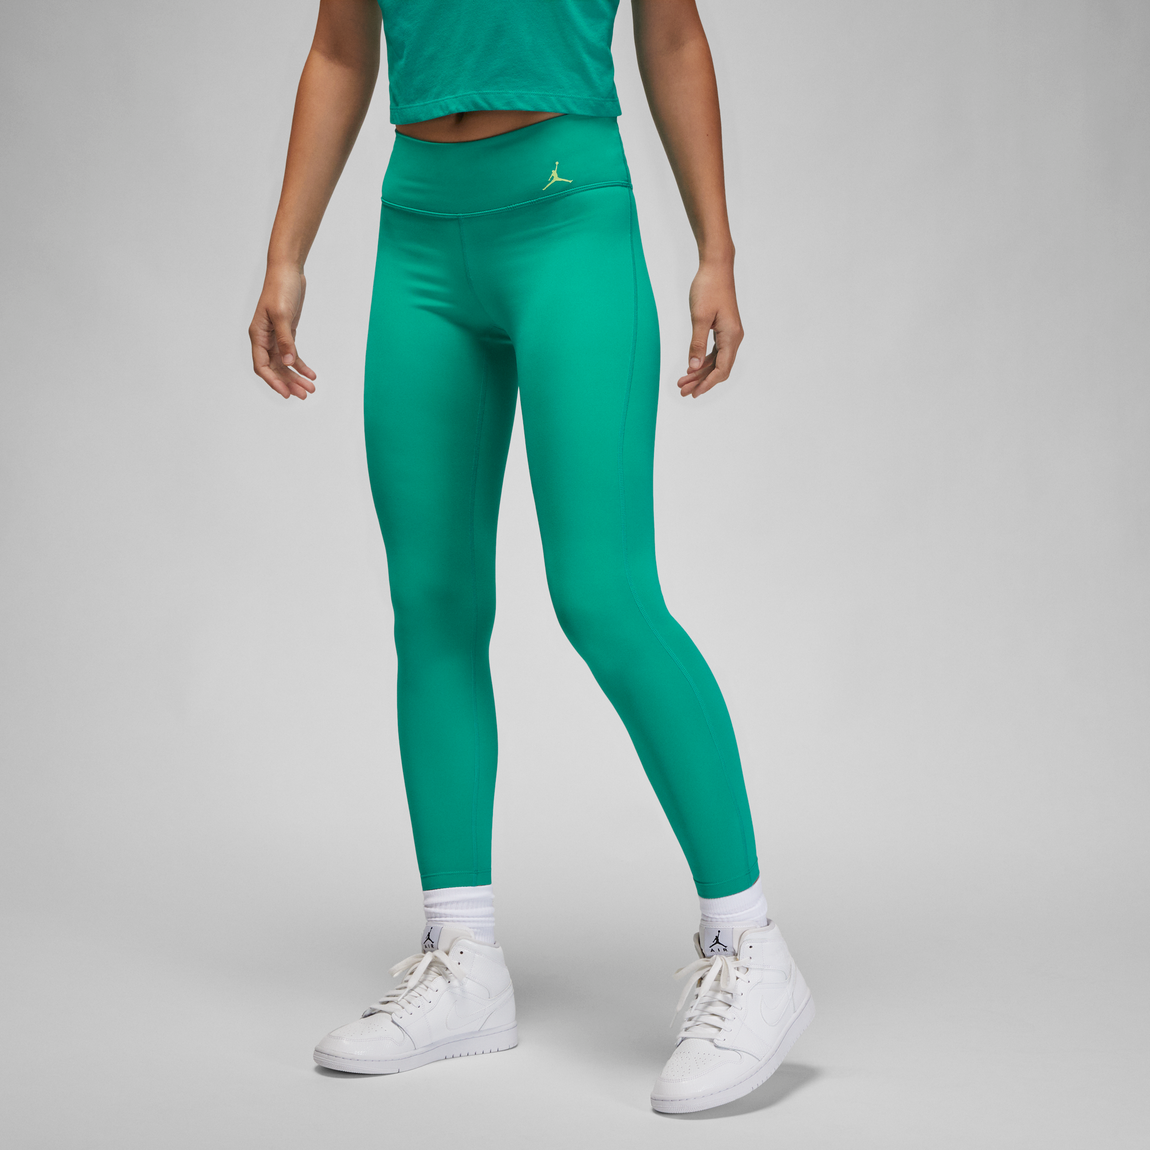 Jordan Women's Sport Leggings (New Emerald/Key Lime) - Jordan Women's Sport Leggings (New Emerald/Key Lime) - 